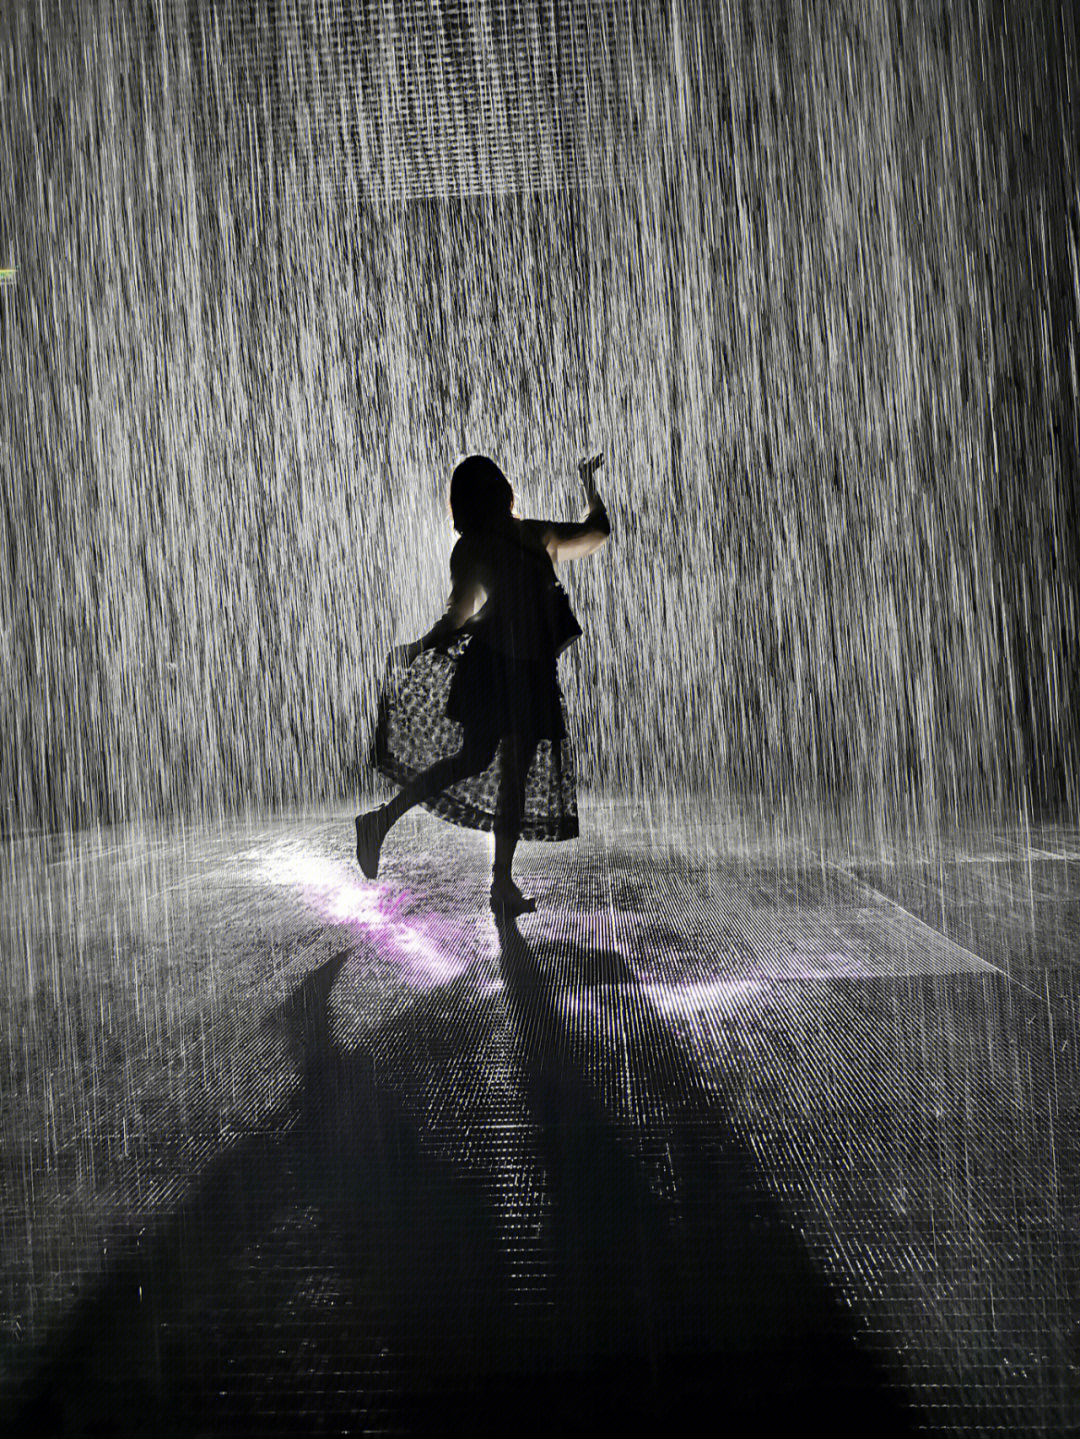 雨中跳舞唯美图片